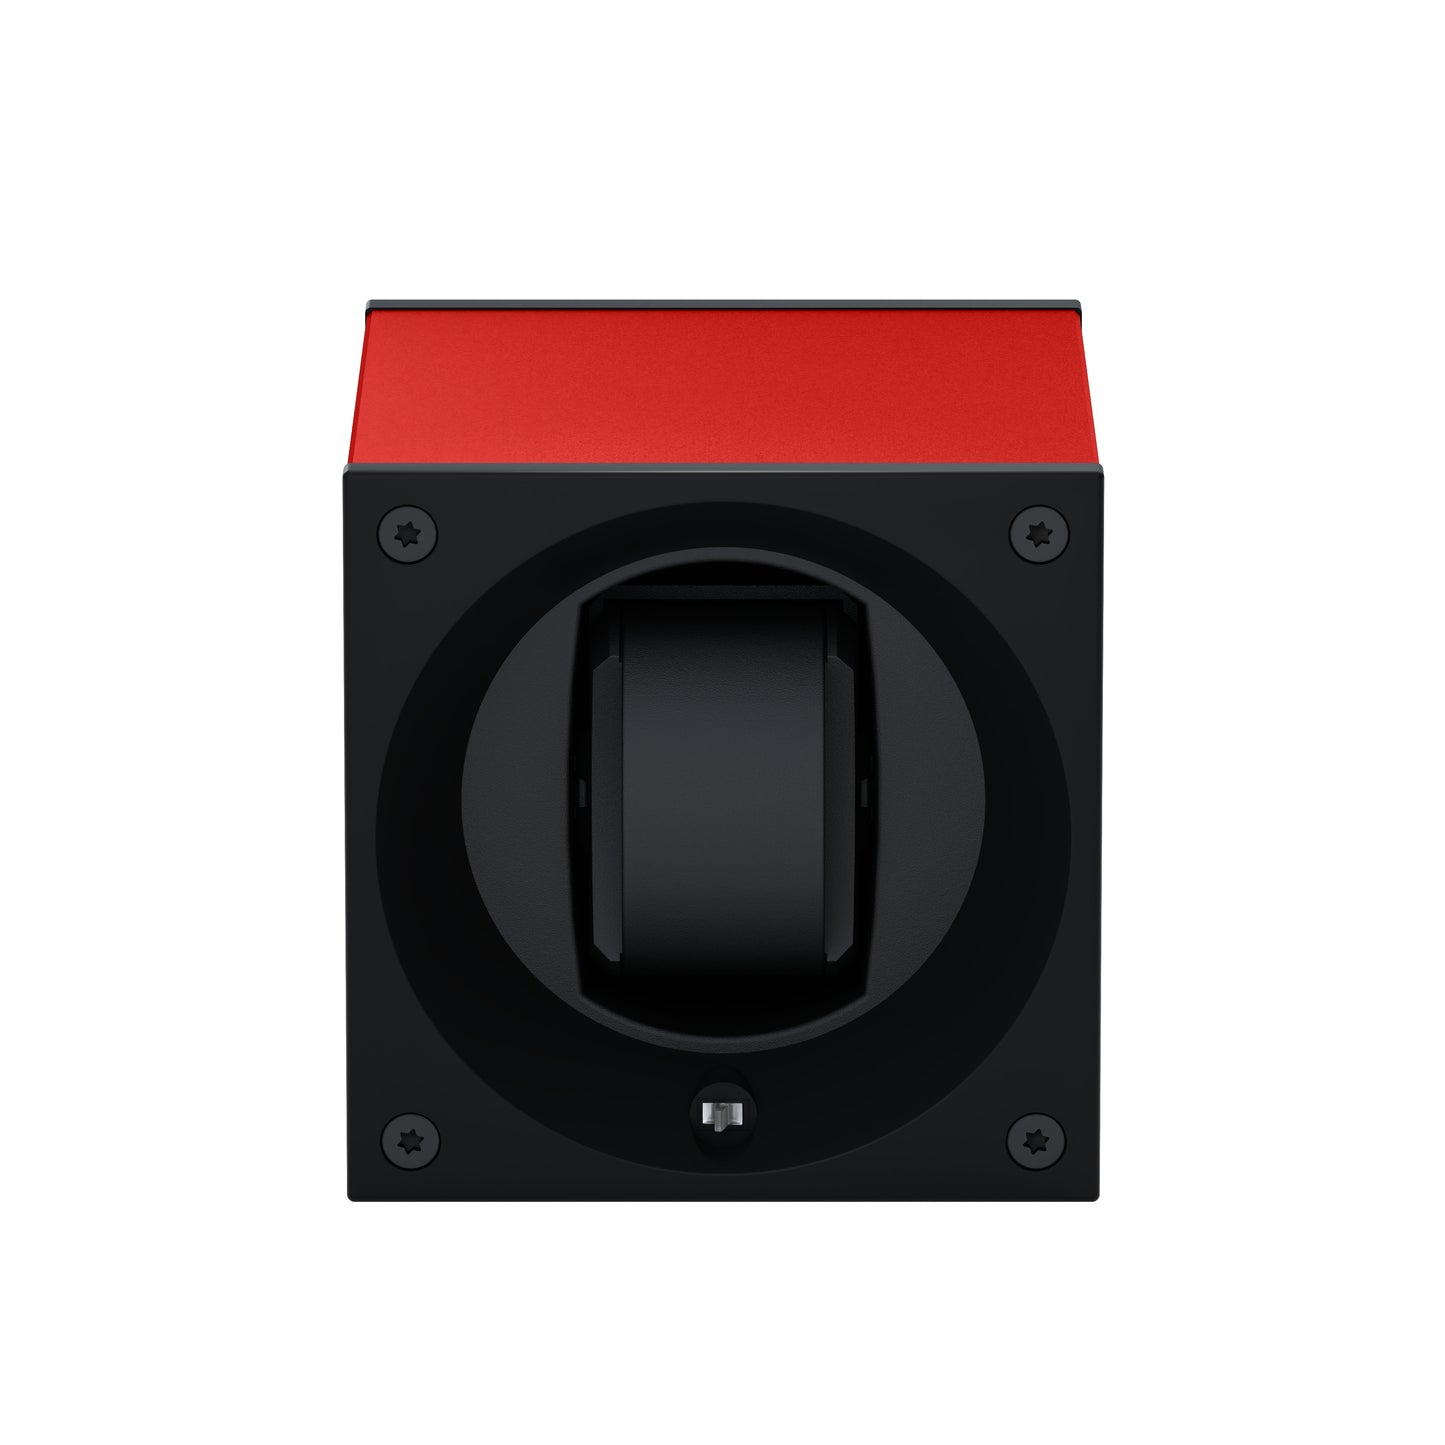 Masterbox 1 montre Aluminium Rouge : écrin rotatif pour montre automatique